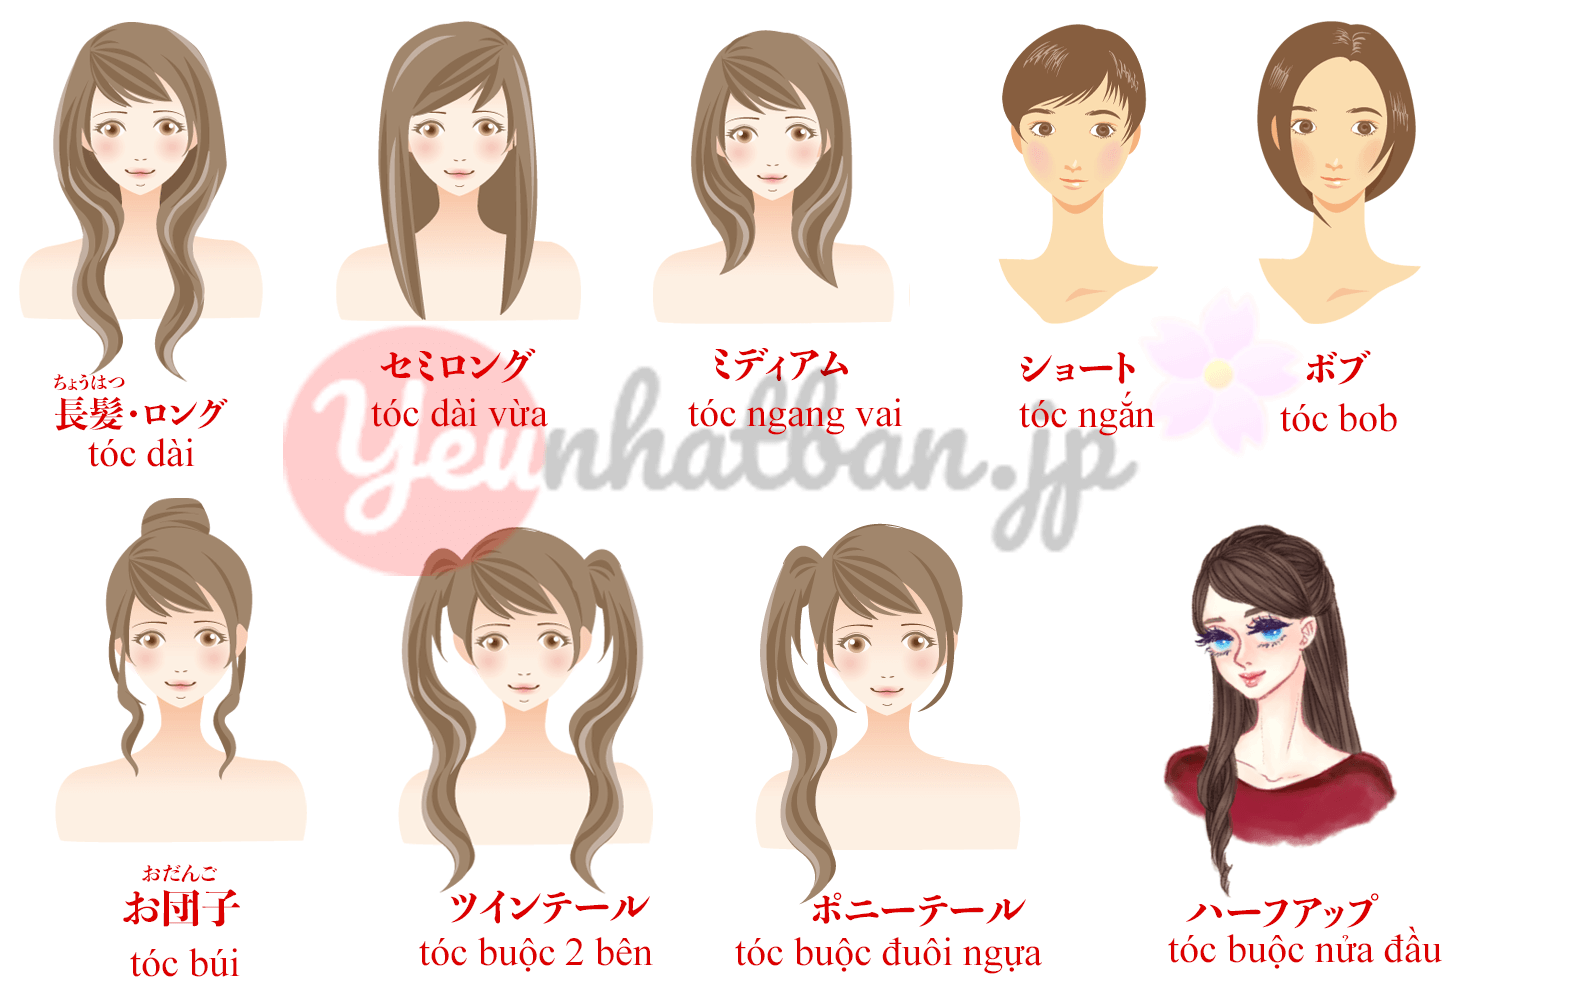 Bạn đang học tiếng Nhật và muốn tìm hiểu về từ vựng liên quan đến tóc? Hãy xem những hình ảnh minh họa về các kiểu tóc phổ biến ở Nhật để bổ sung thêm vốn từ vựng cho bản thân.